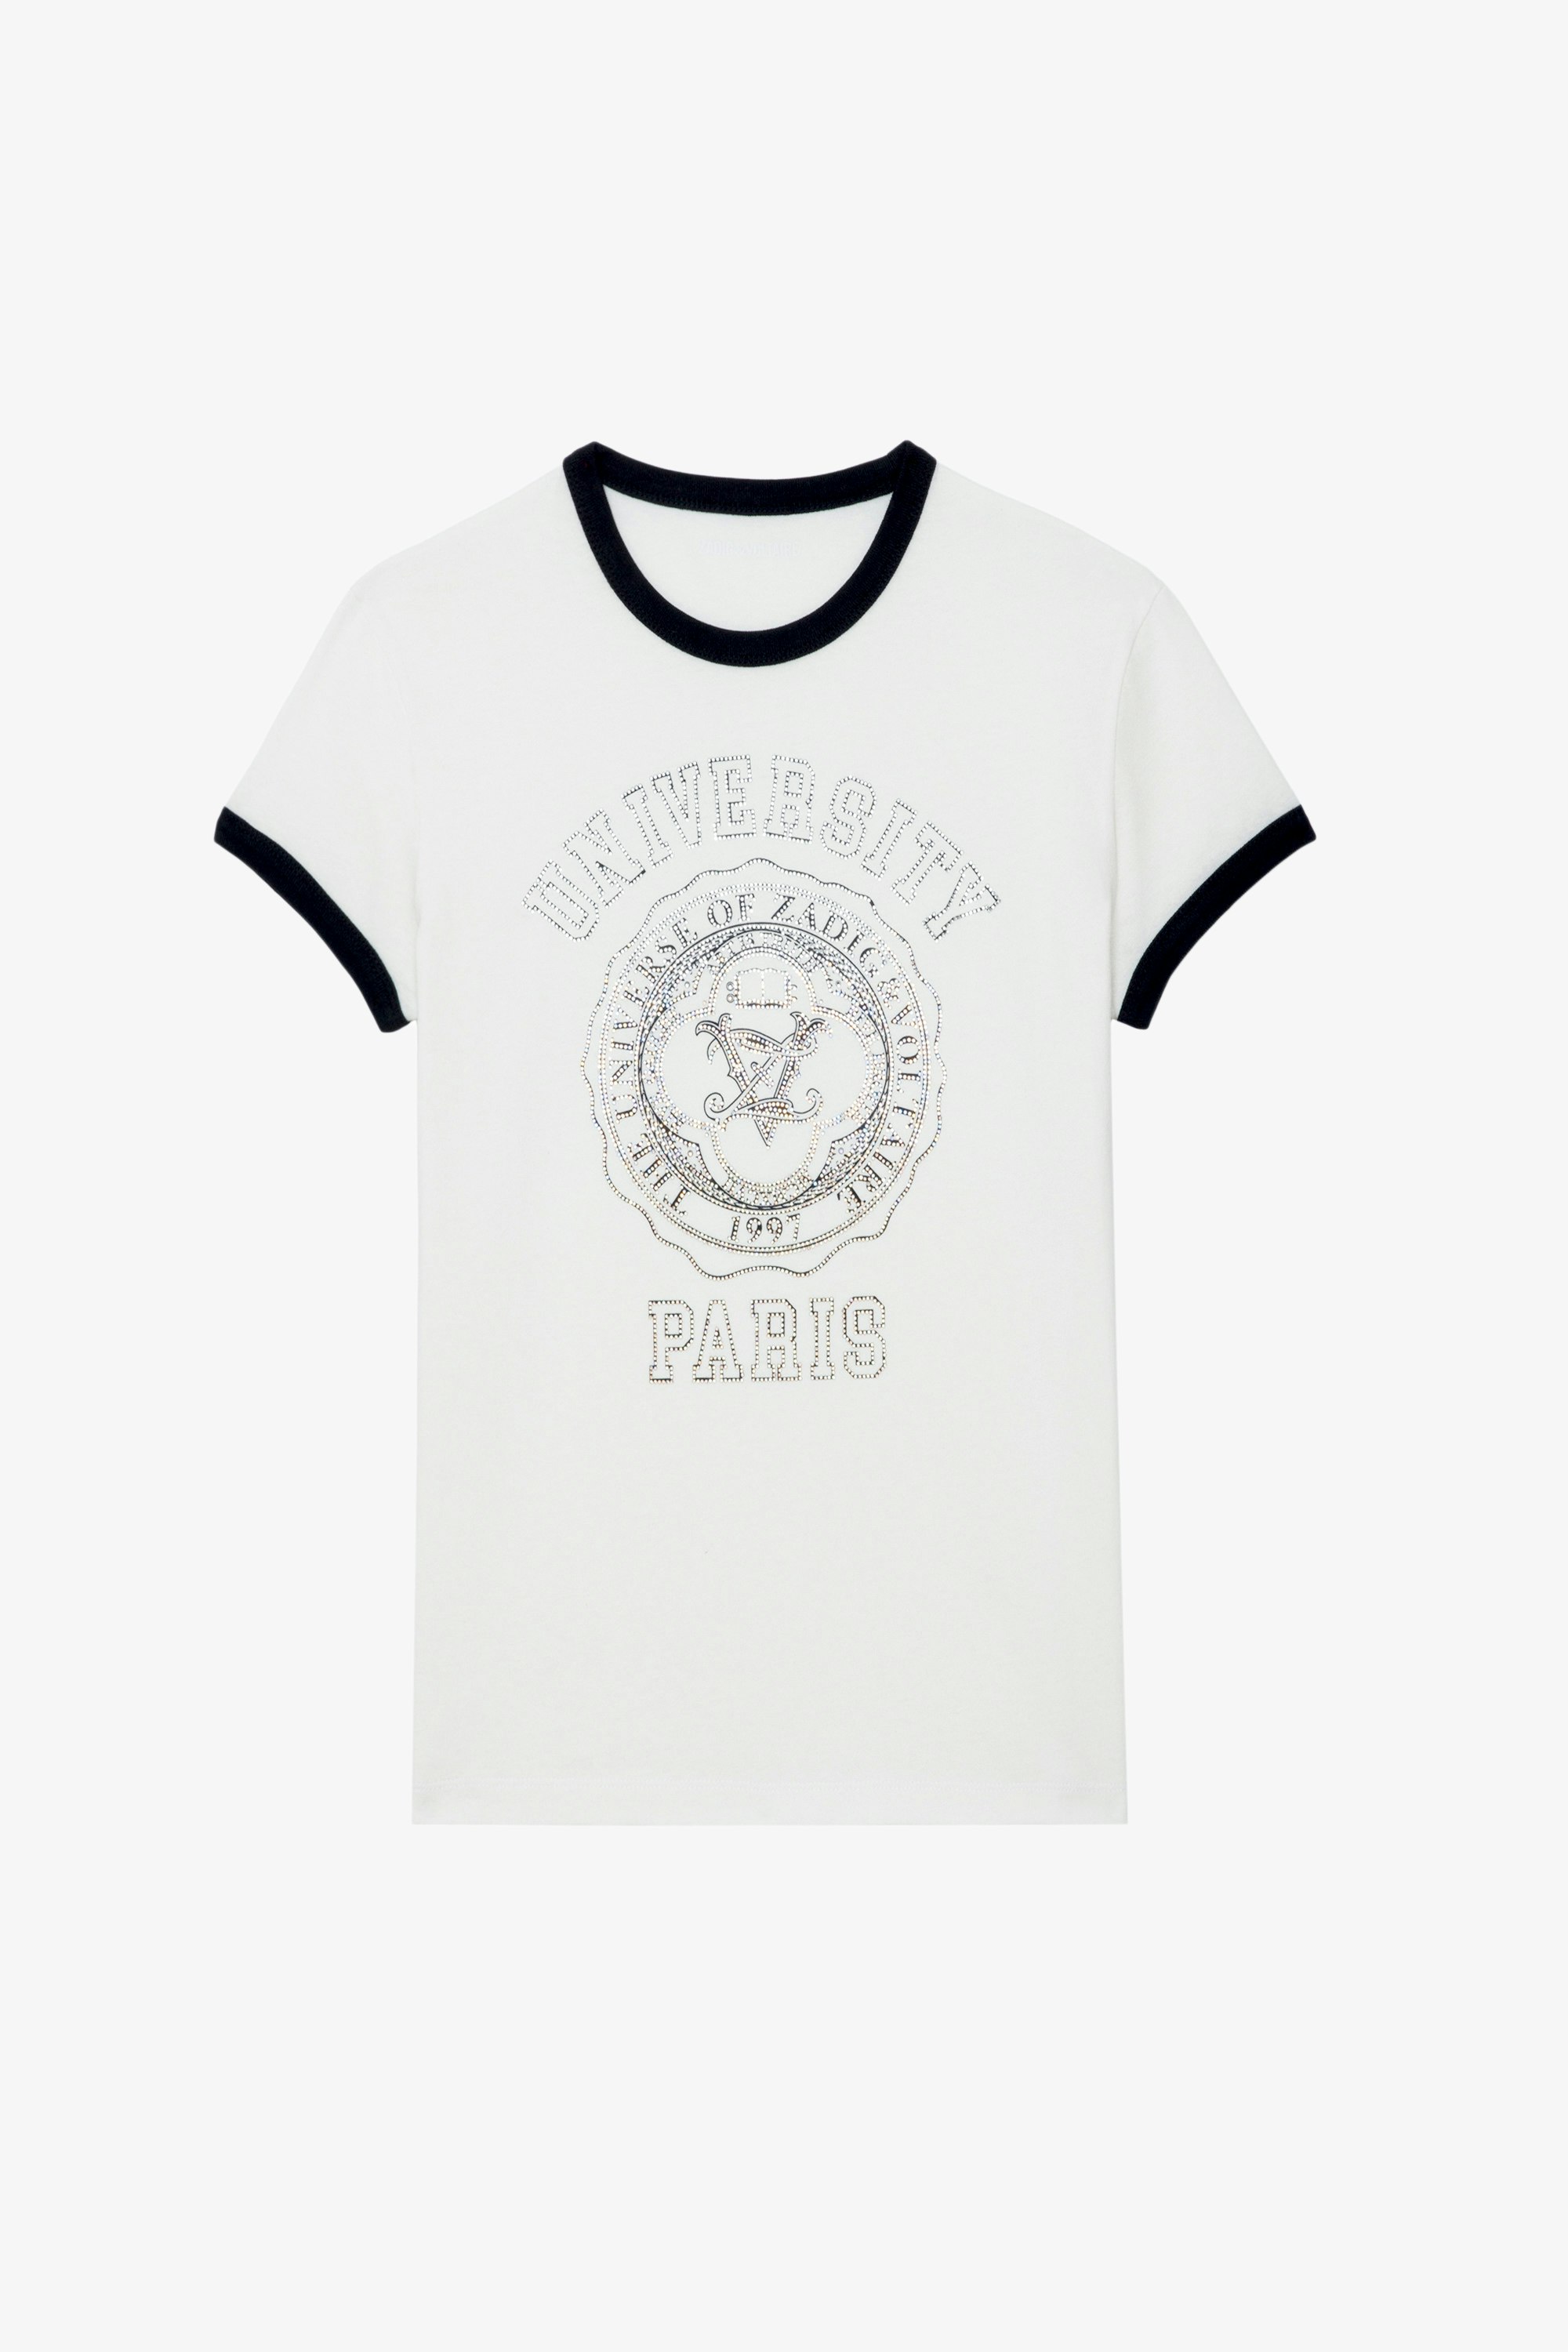 Camiseta Walk University Strass - Camiseta blanca de algodón con mangas cortas, motivo universitario con strass y bordes de contraste.